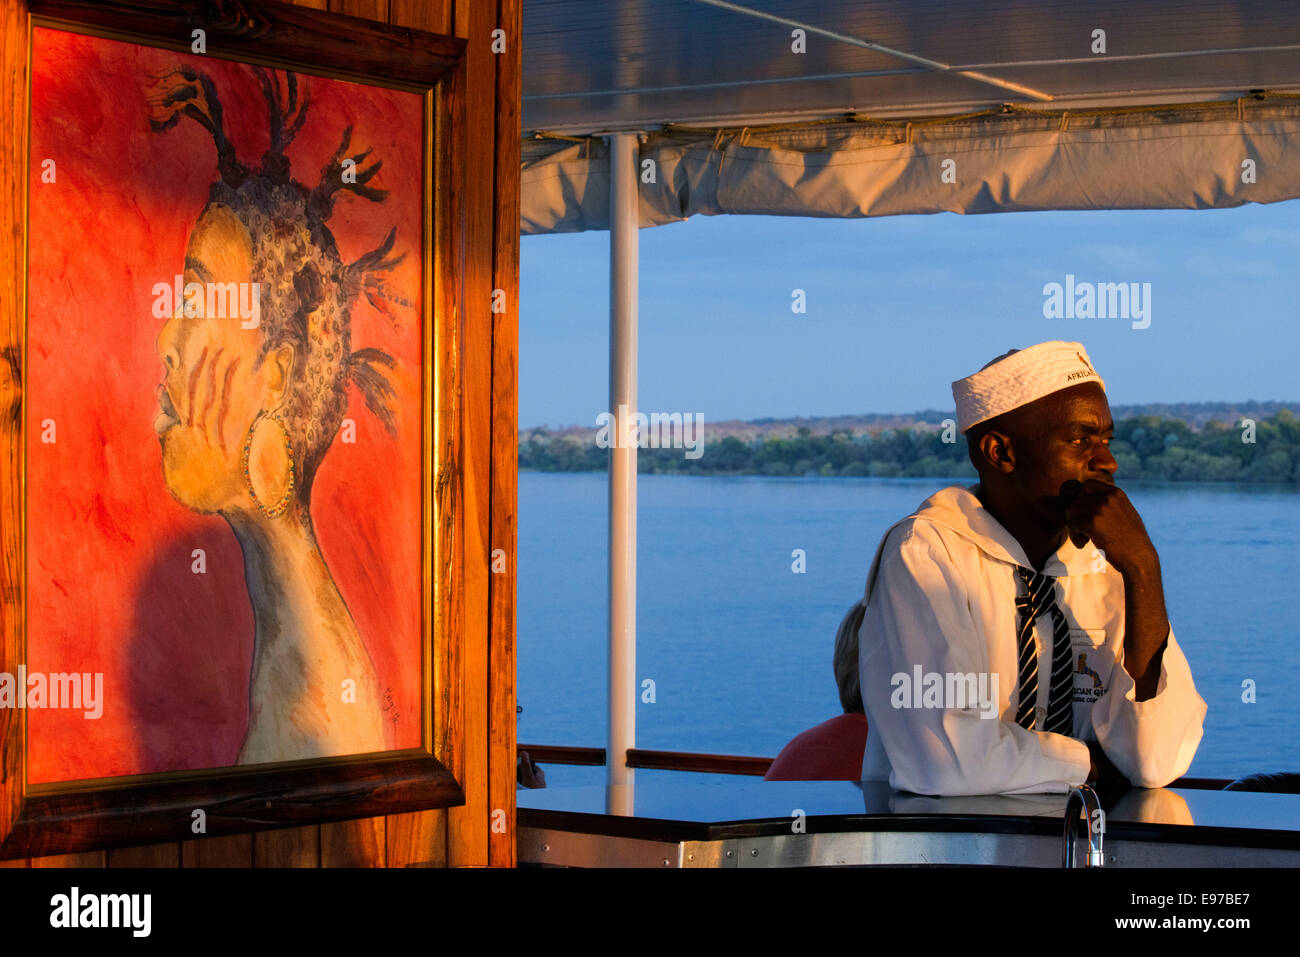 Kreuzfahrt entlang der Victoria Falls an Bord der "African Queen". Entspannen Sie sich und genießen Sie unsere afrikanischen Sonnenuntergänge von unserer gehobenen Kreuzfahrt Boote... Stockfoto